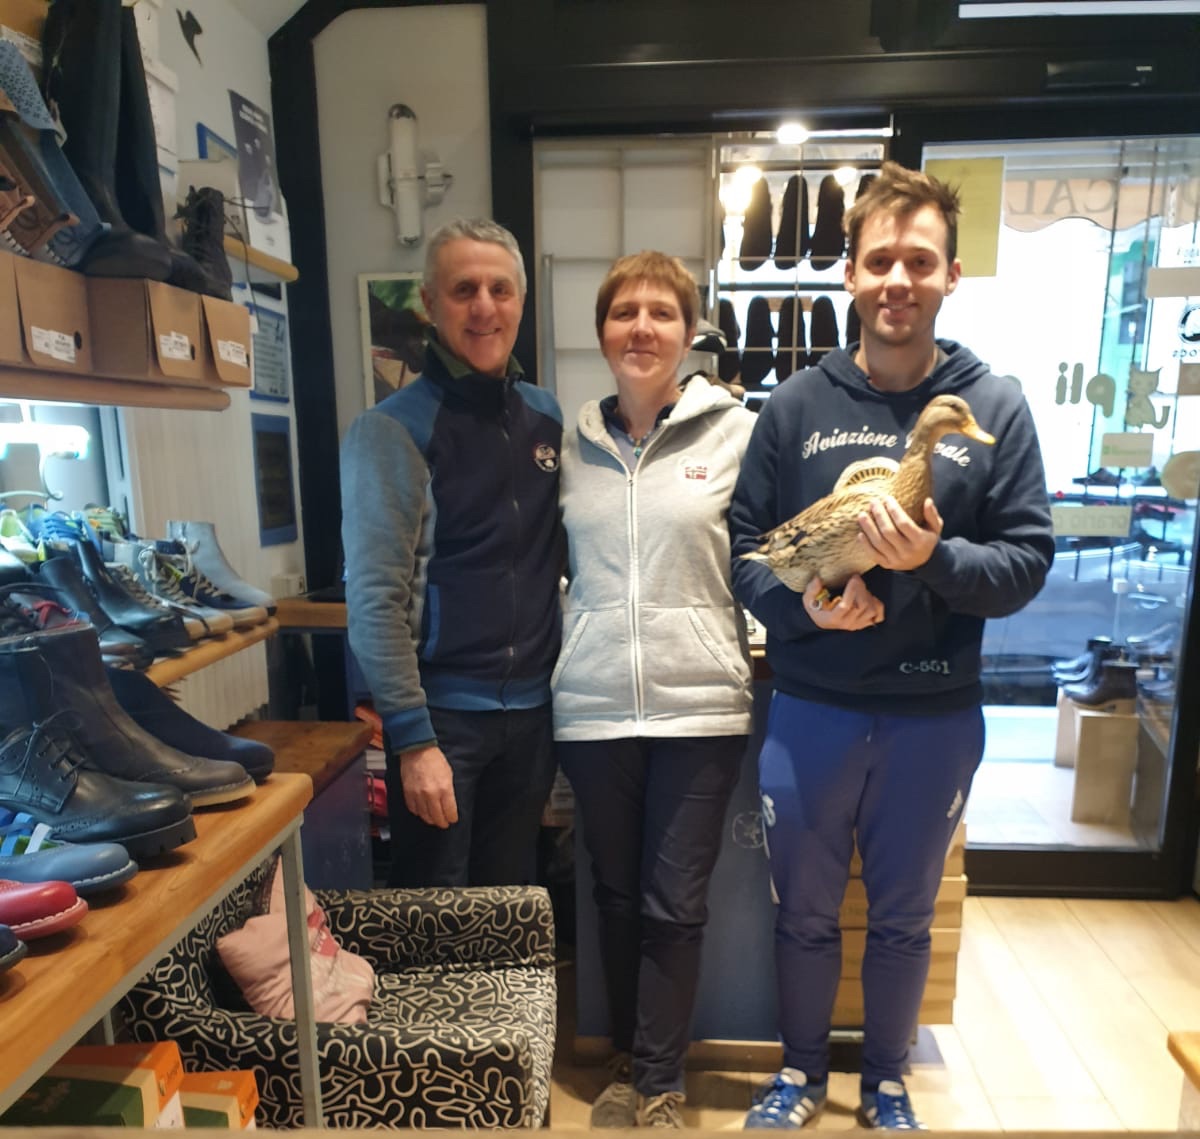 La famiglia di Pli-Pla: i due titolari e i loro figli, tutti con ai piedi scarpe di qualità a prezzi accessibili a Milano